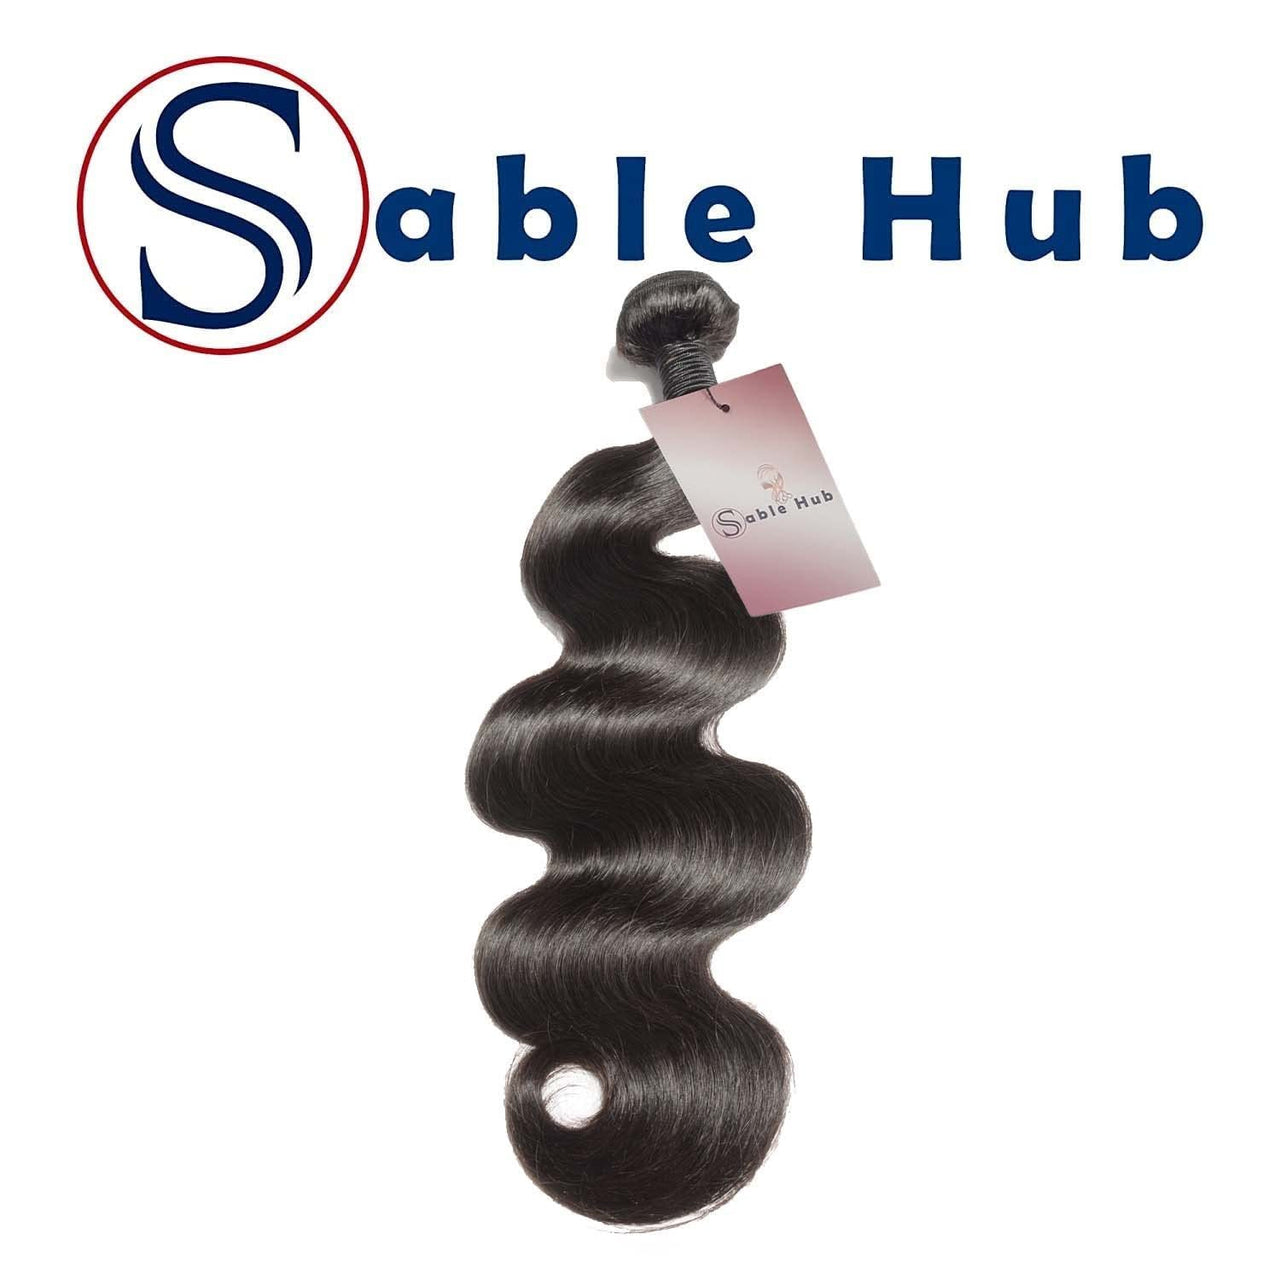 Sable Hub